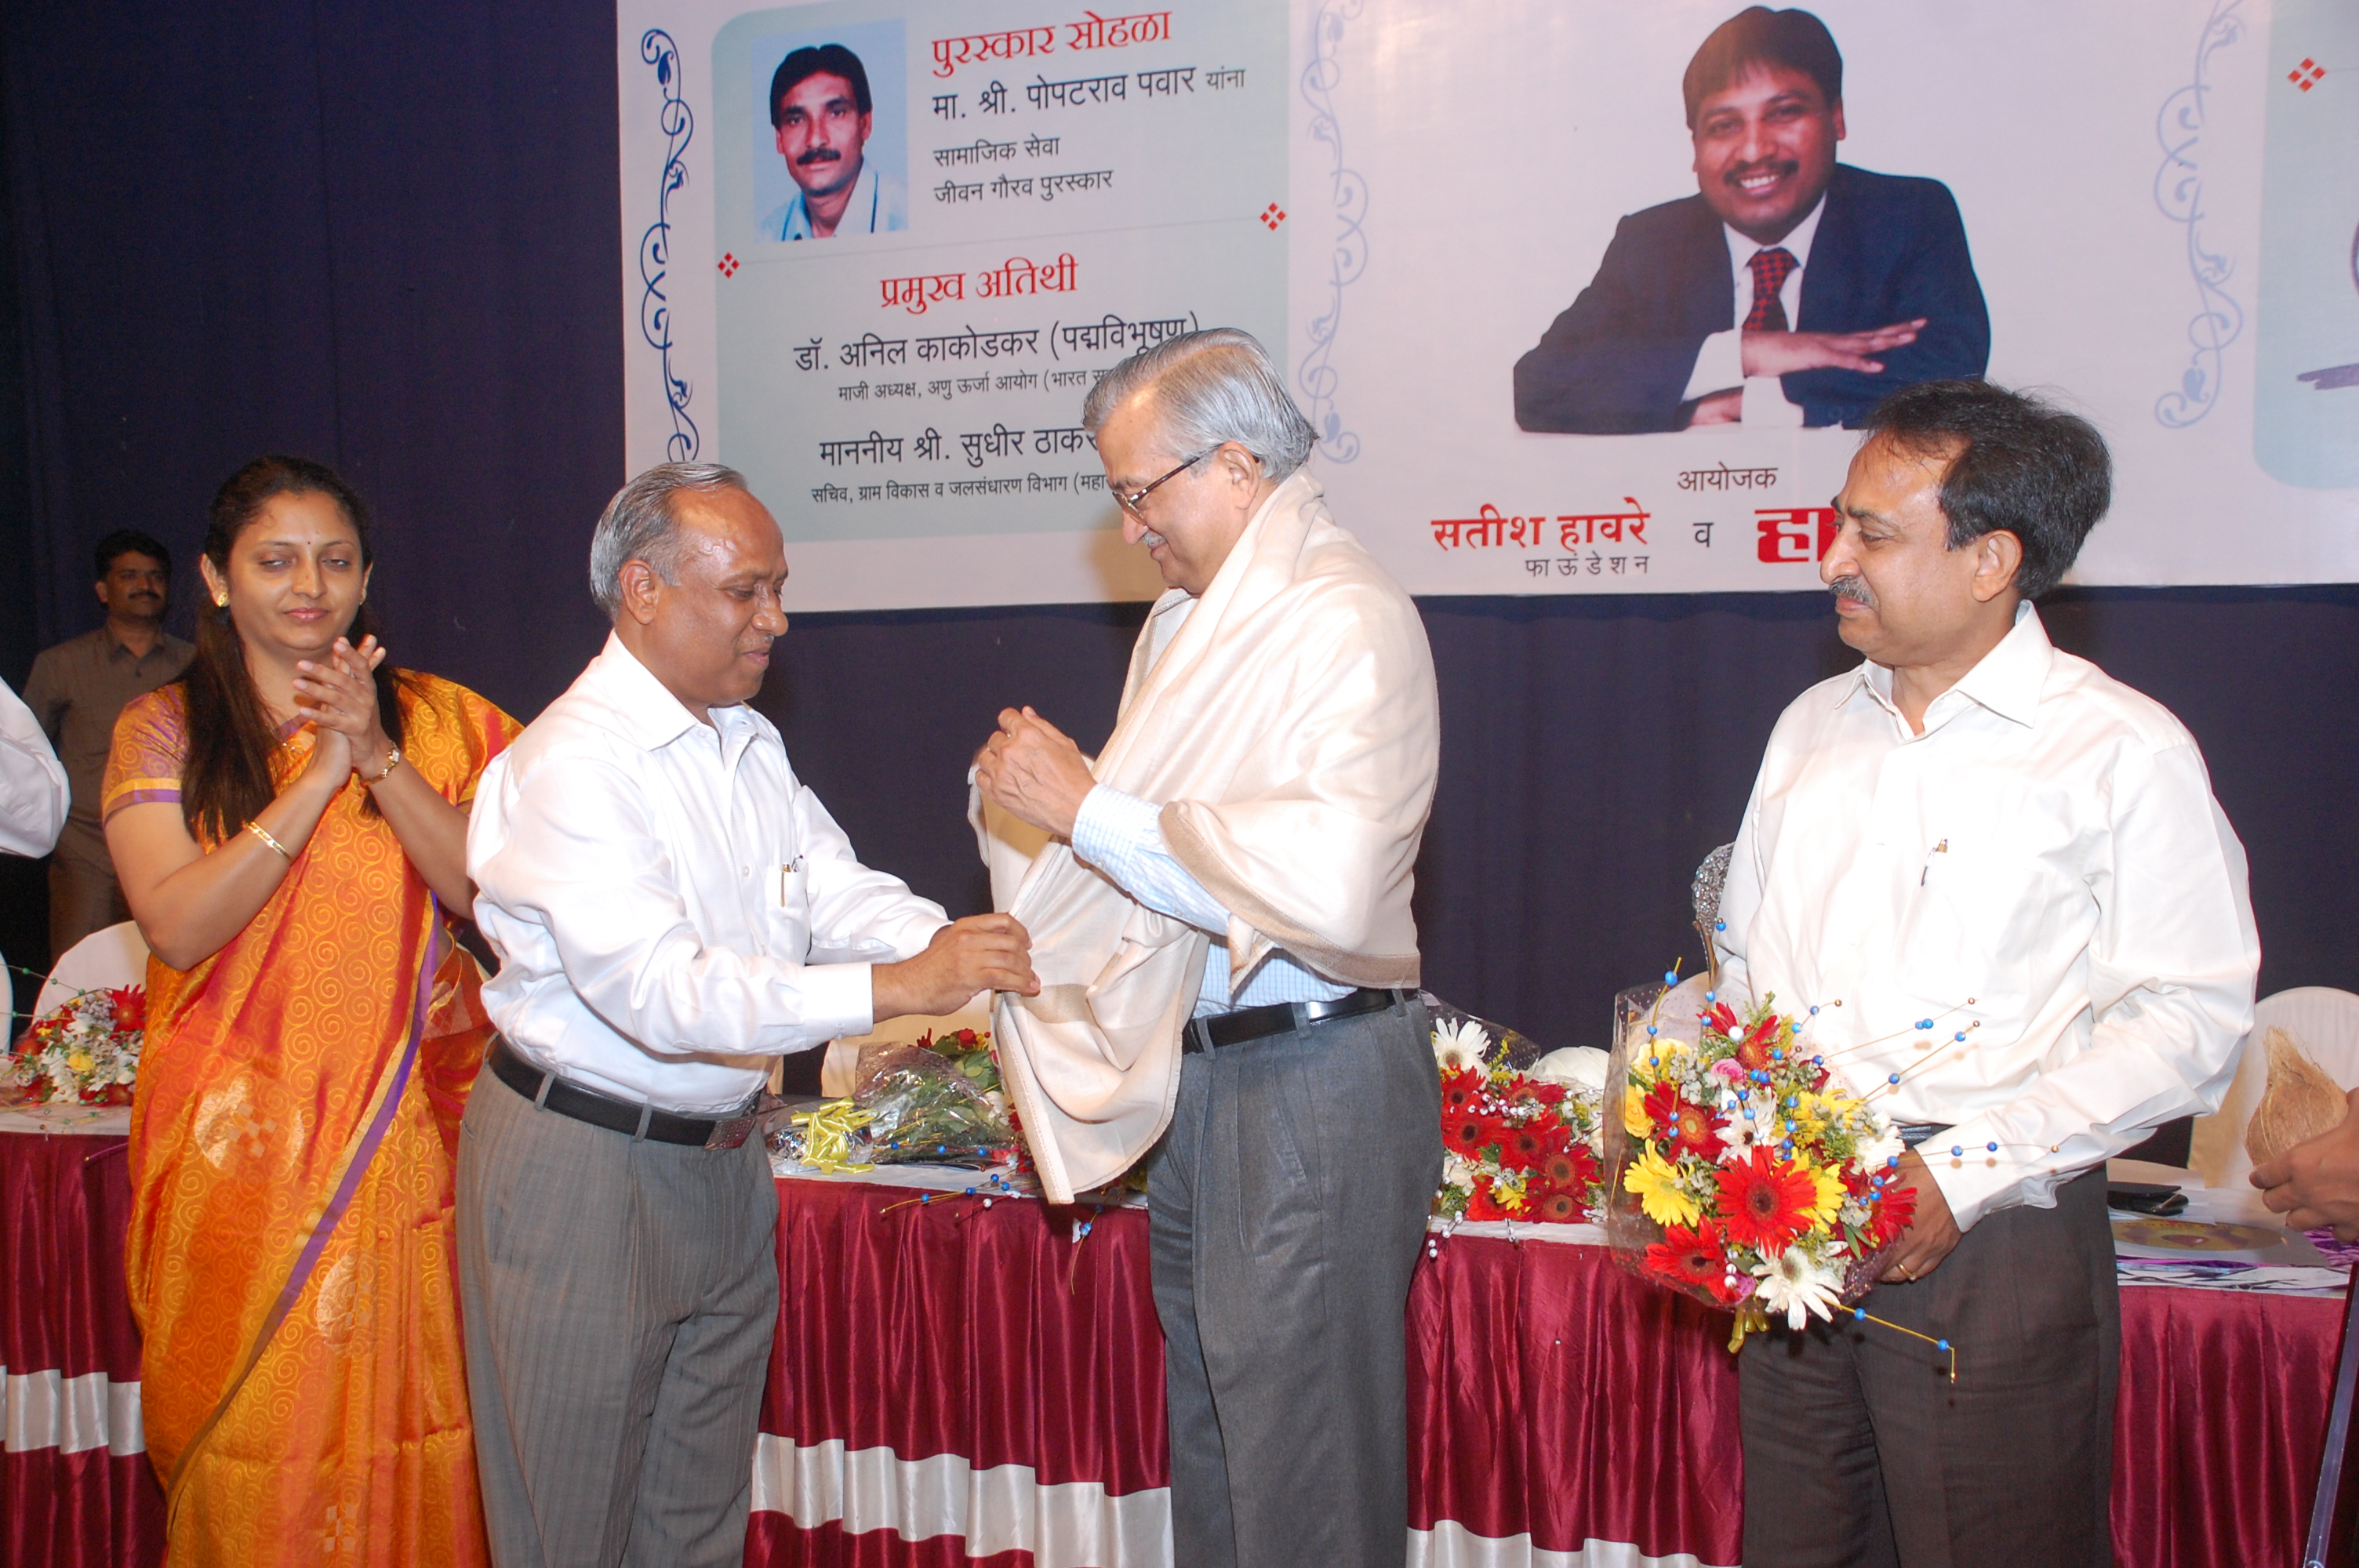 Felicitating Sir Anand Kakodkar